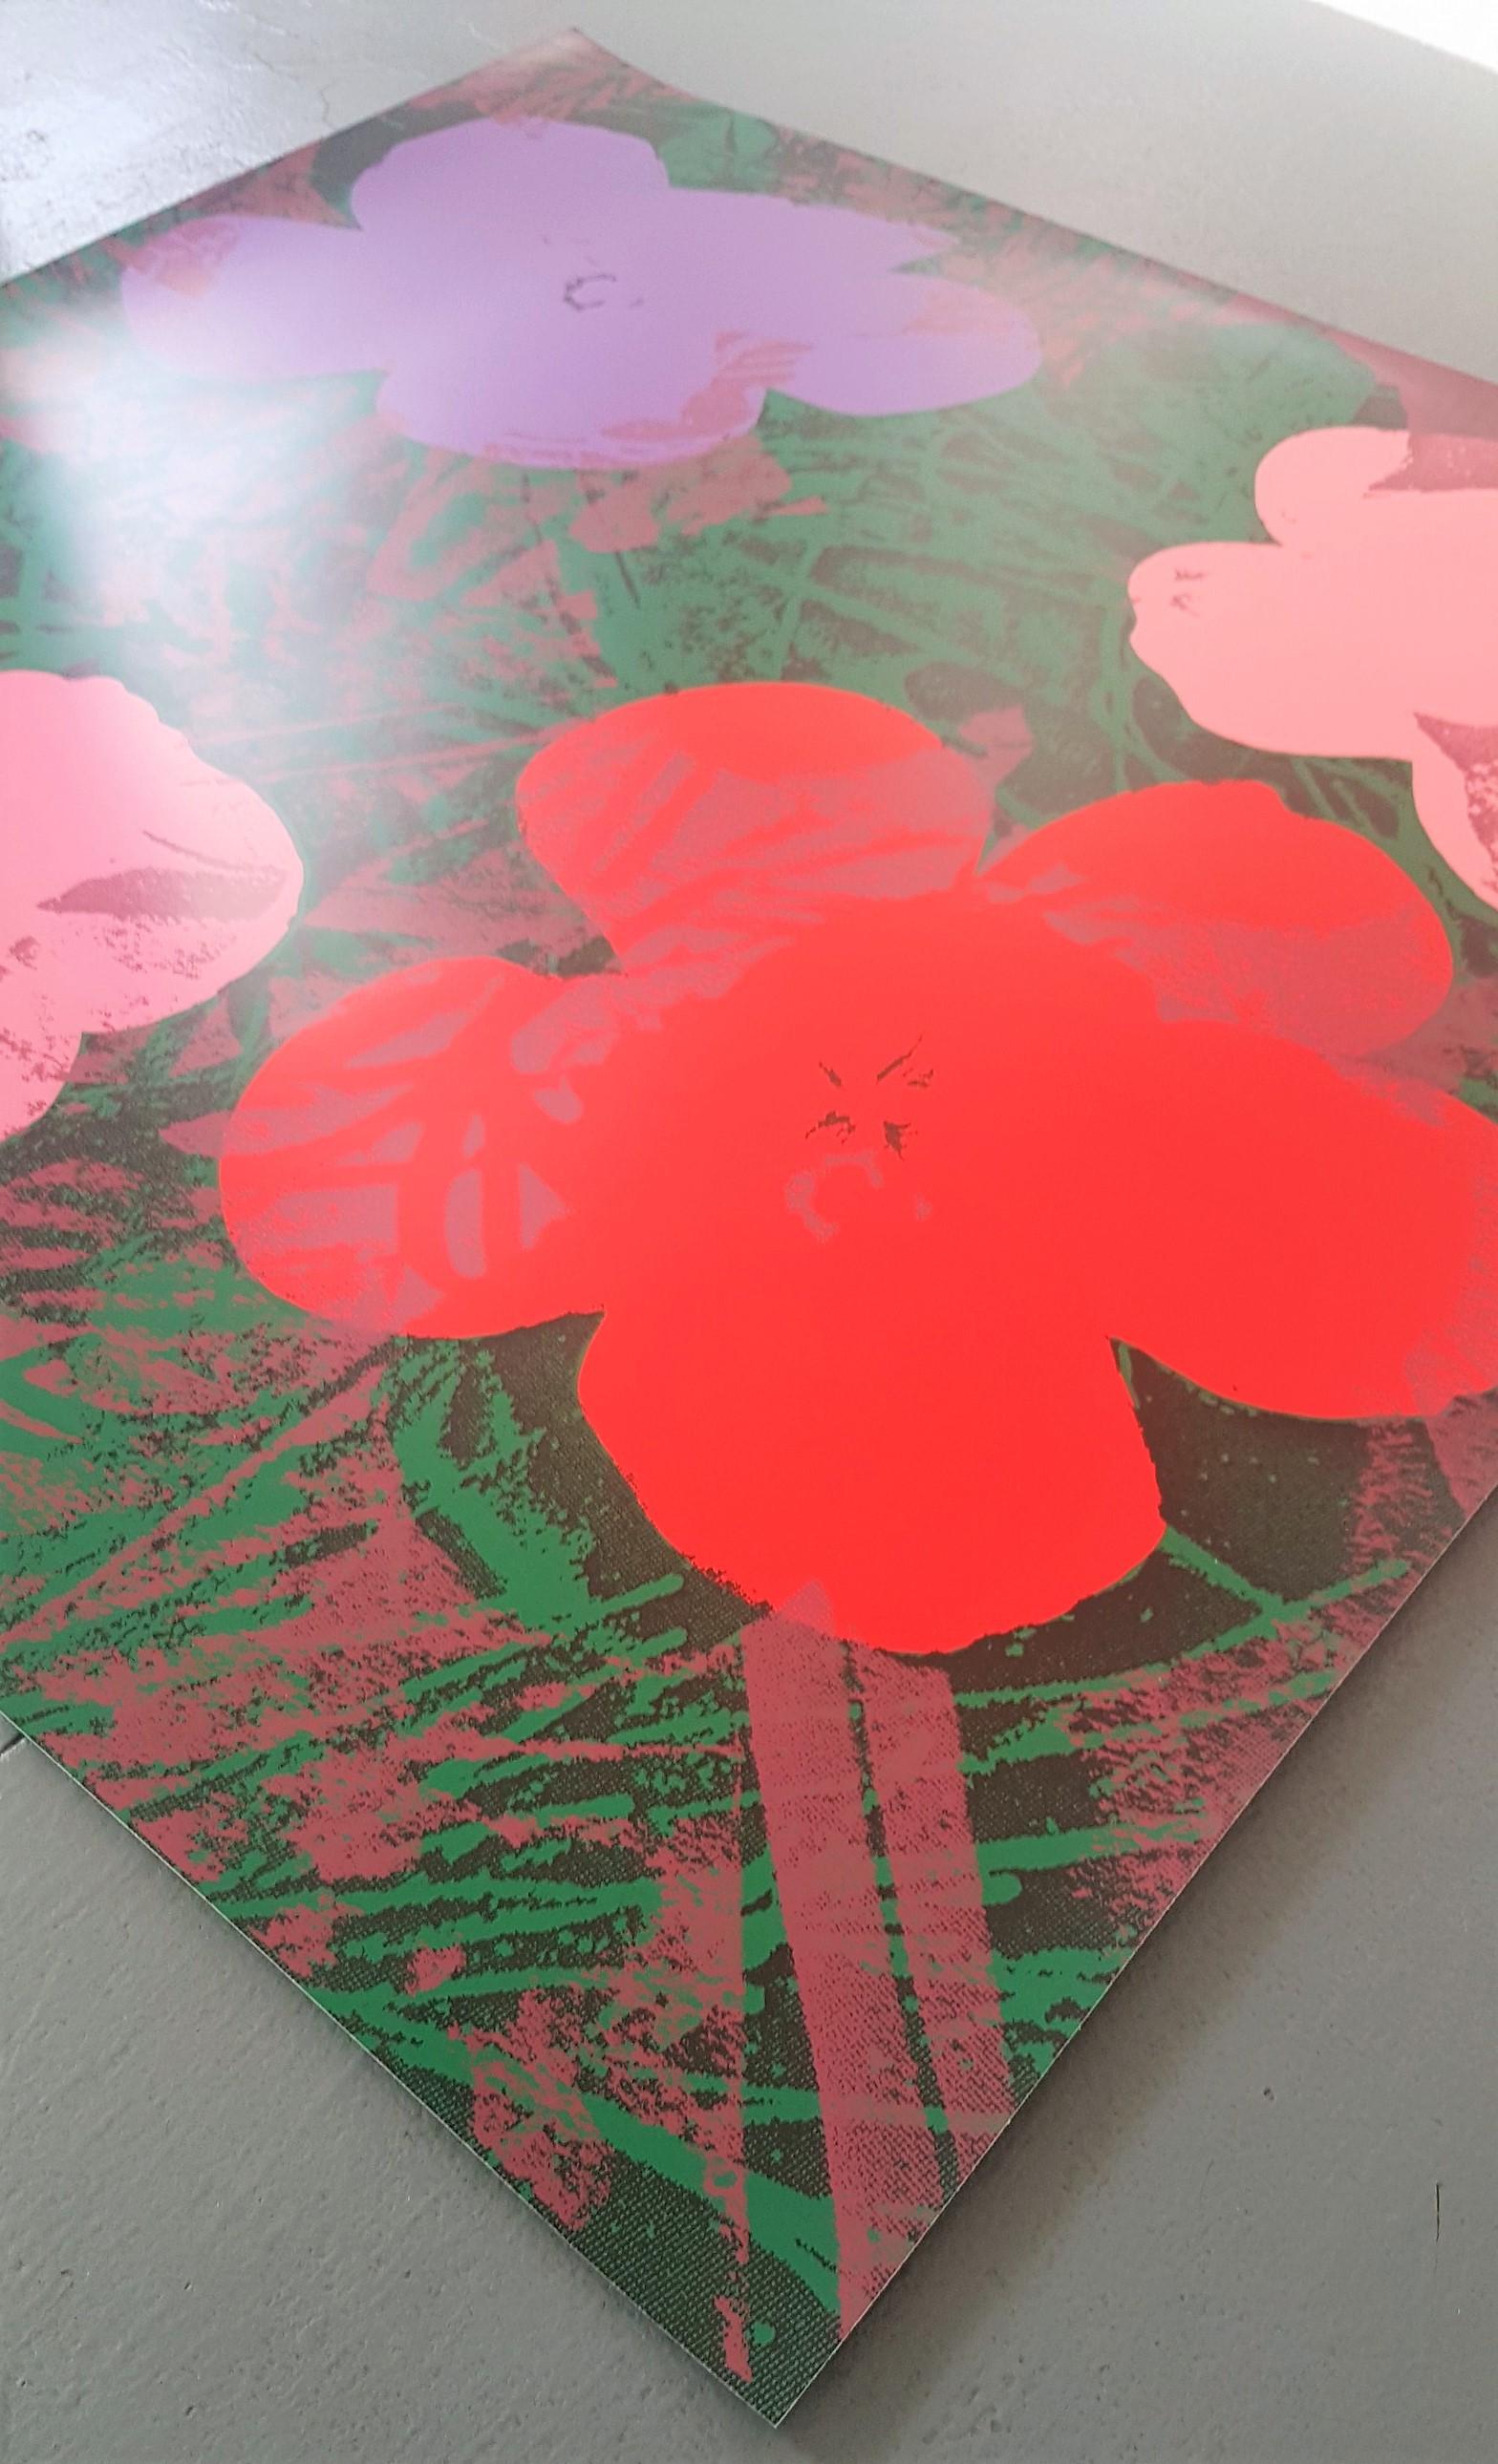 Fleurs (rose, rouge, violet - Pop Art) (~65% DE RÉDUCTION SUR LE PRIX DE LISTE, DURÉE LIMITÉE) - Print de Jurgen Kuhl 